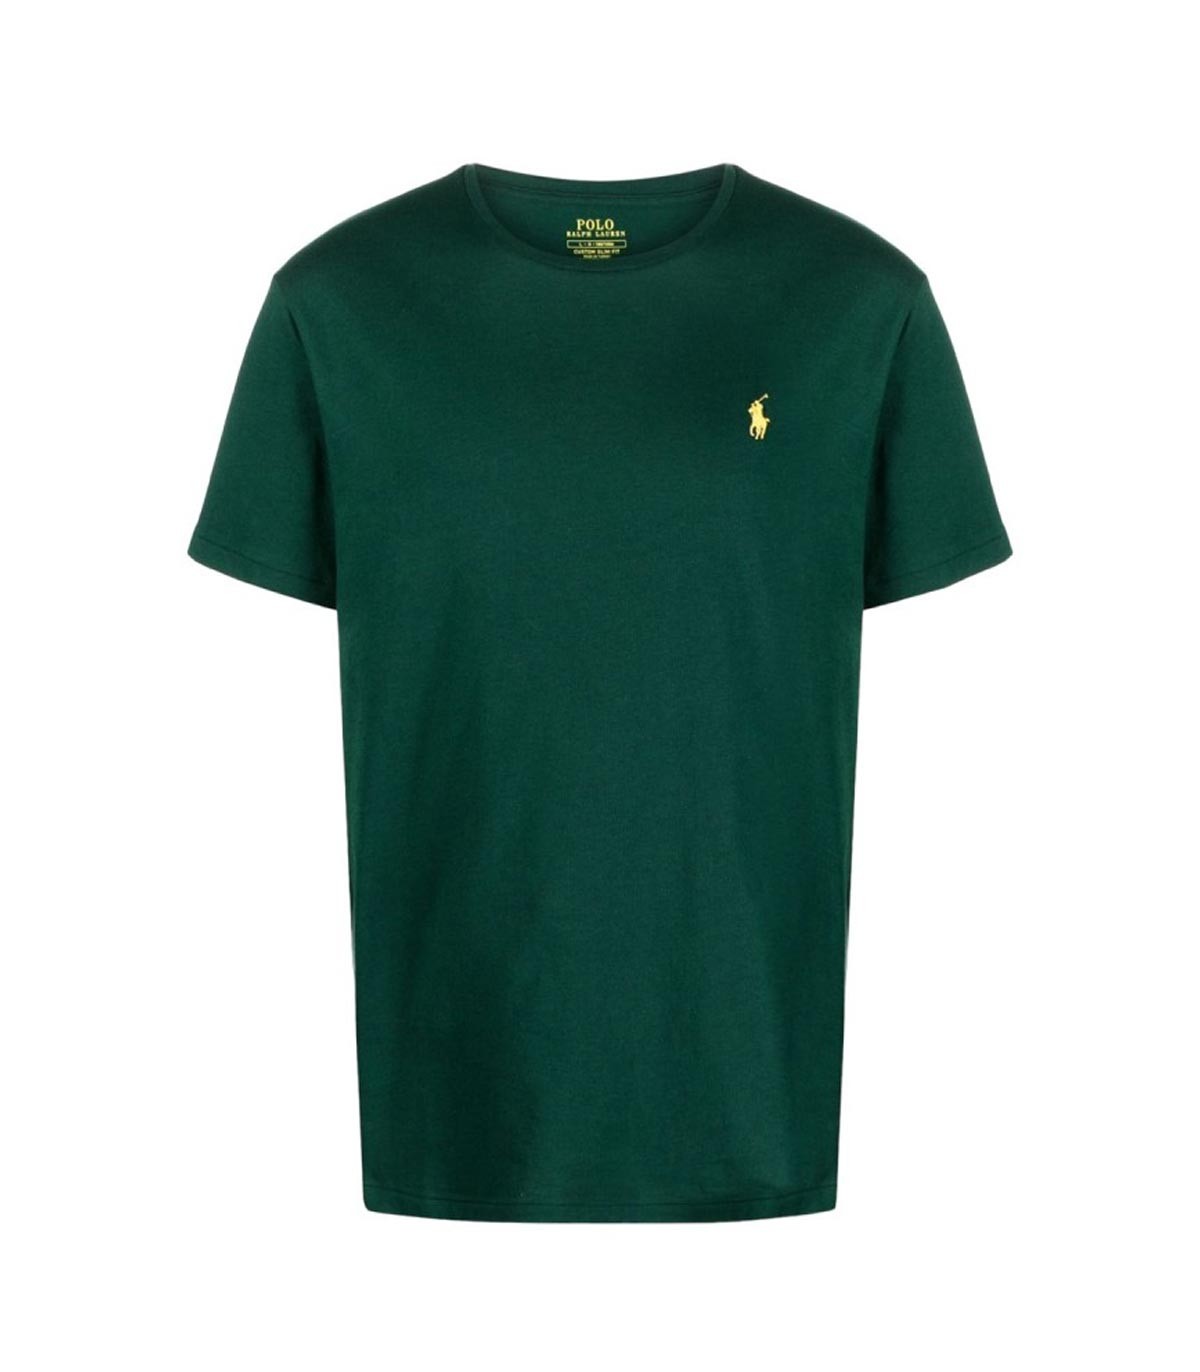 Polo Ralph Lauren - Camiseta SL con Bordado - Verde